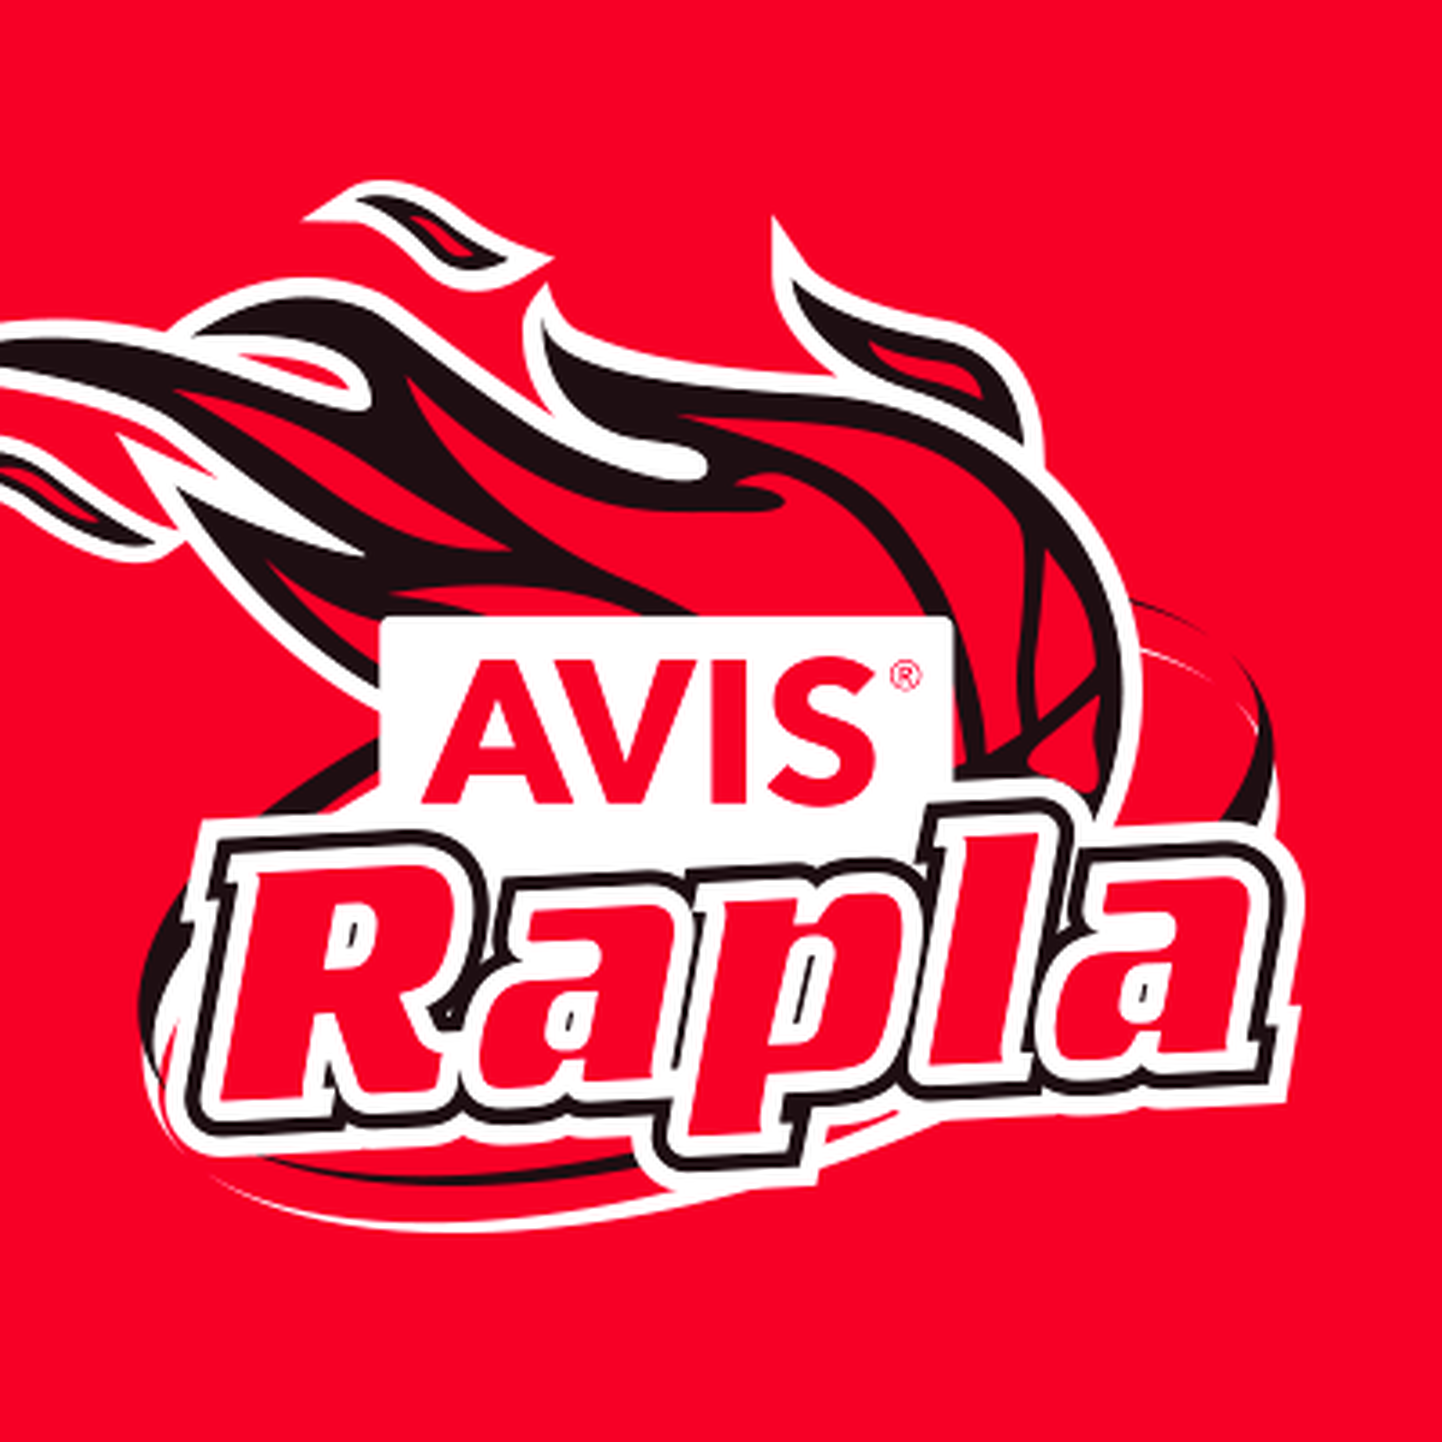 AVIS Rapla uus logo.